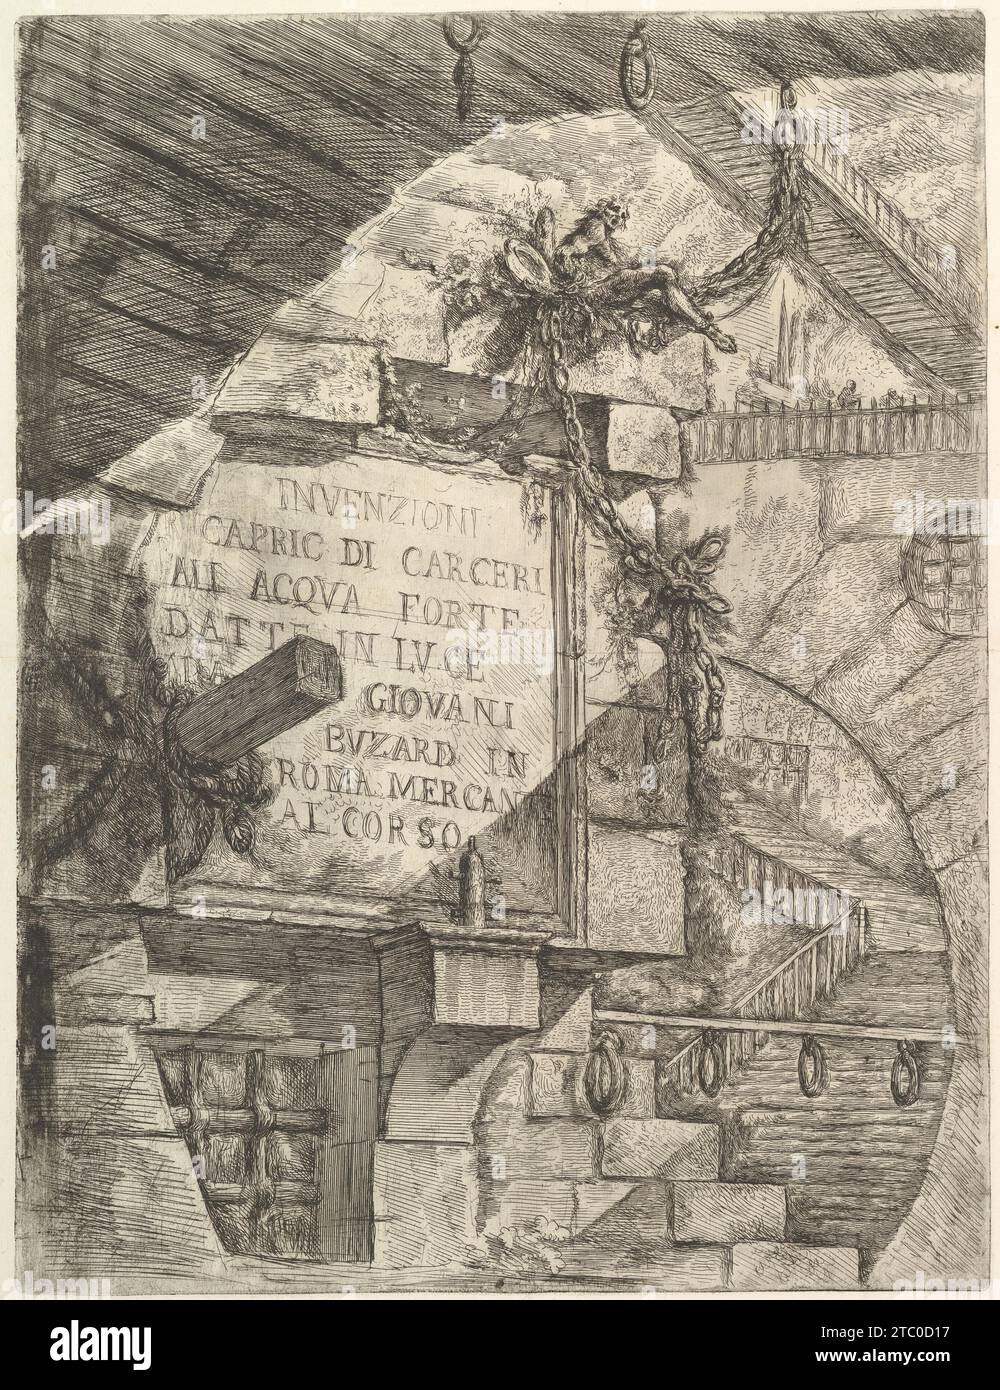 Title Page, from 'Carceri d'invenzione' (Imaginary Prisons) 1937 by Giovanni Battista Piranesi Stock Photo